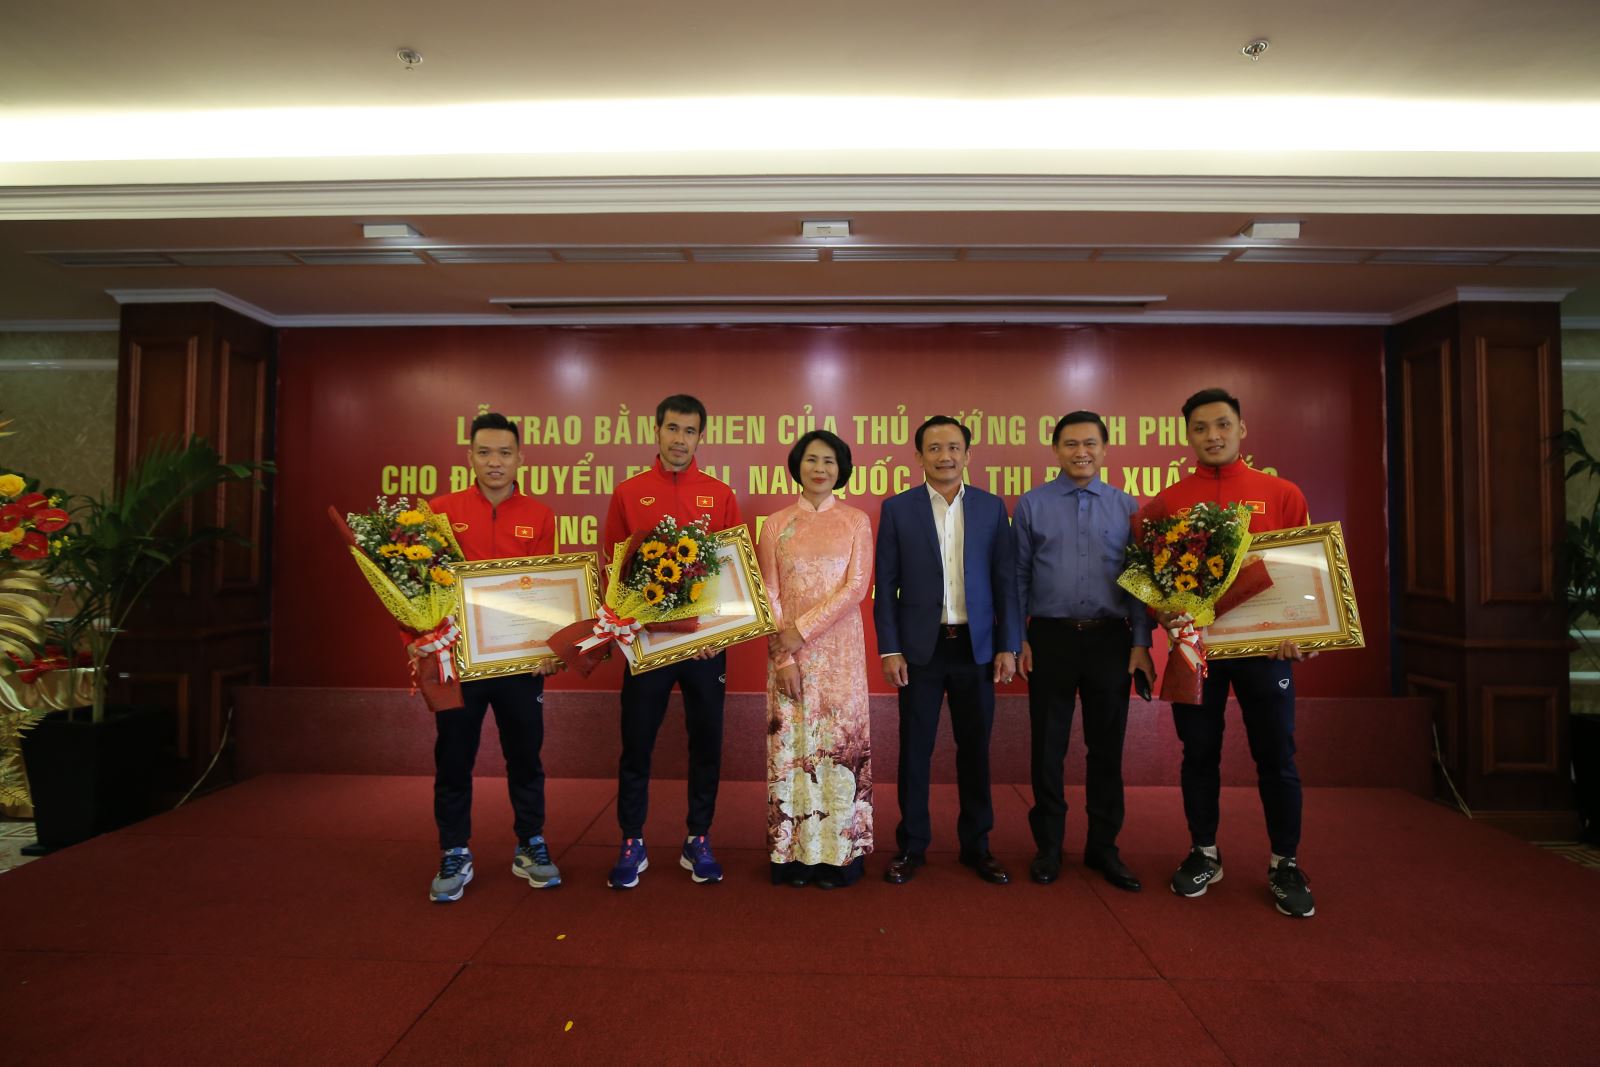 HLV Phạm Minh Giang và 2 cầu thủ Trần Văn Vũ, Hồ Văn Ý nhận thêm vinh dự cá nhân từ Thủ tướng Chính phủ. Ảnh: Anh Phương